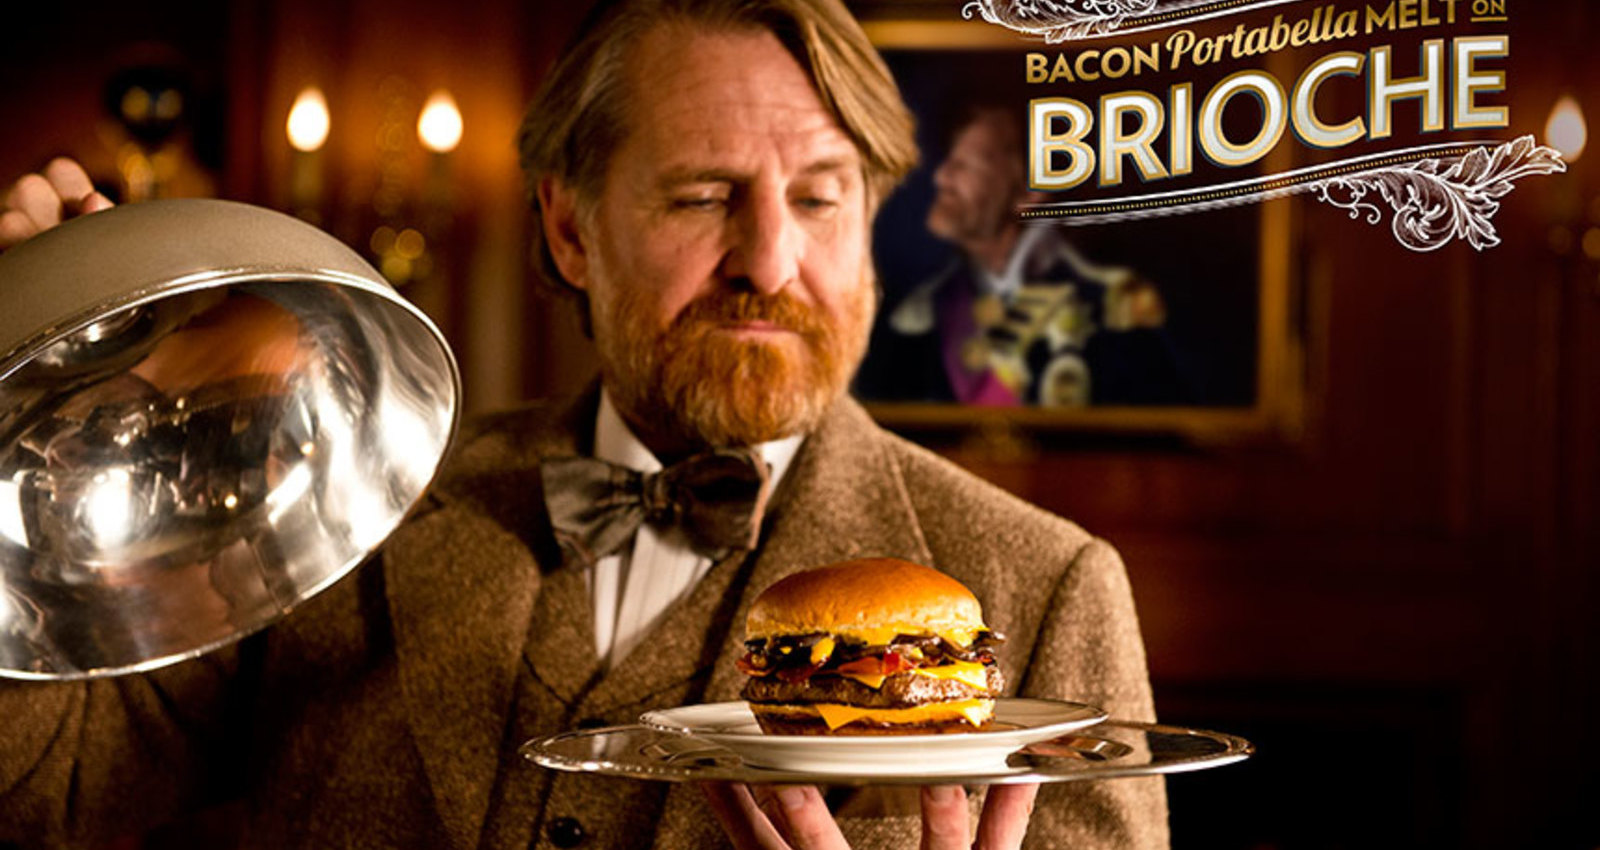 Wendy's Bacon Portabella Melt on Brioche Campaign